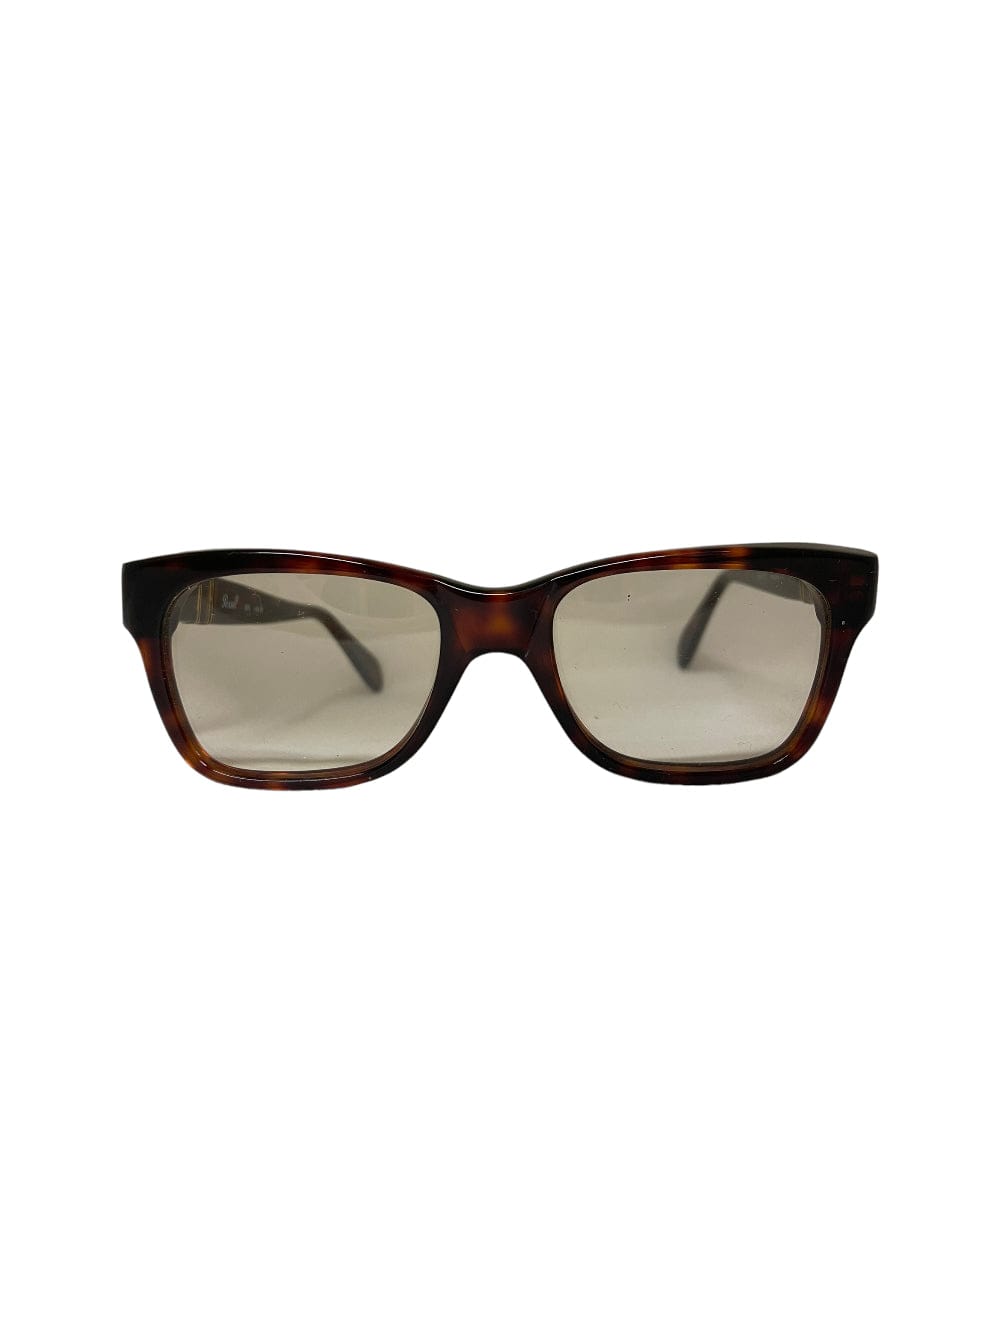 Shop Persol 305 - Havana Sunglasses